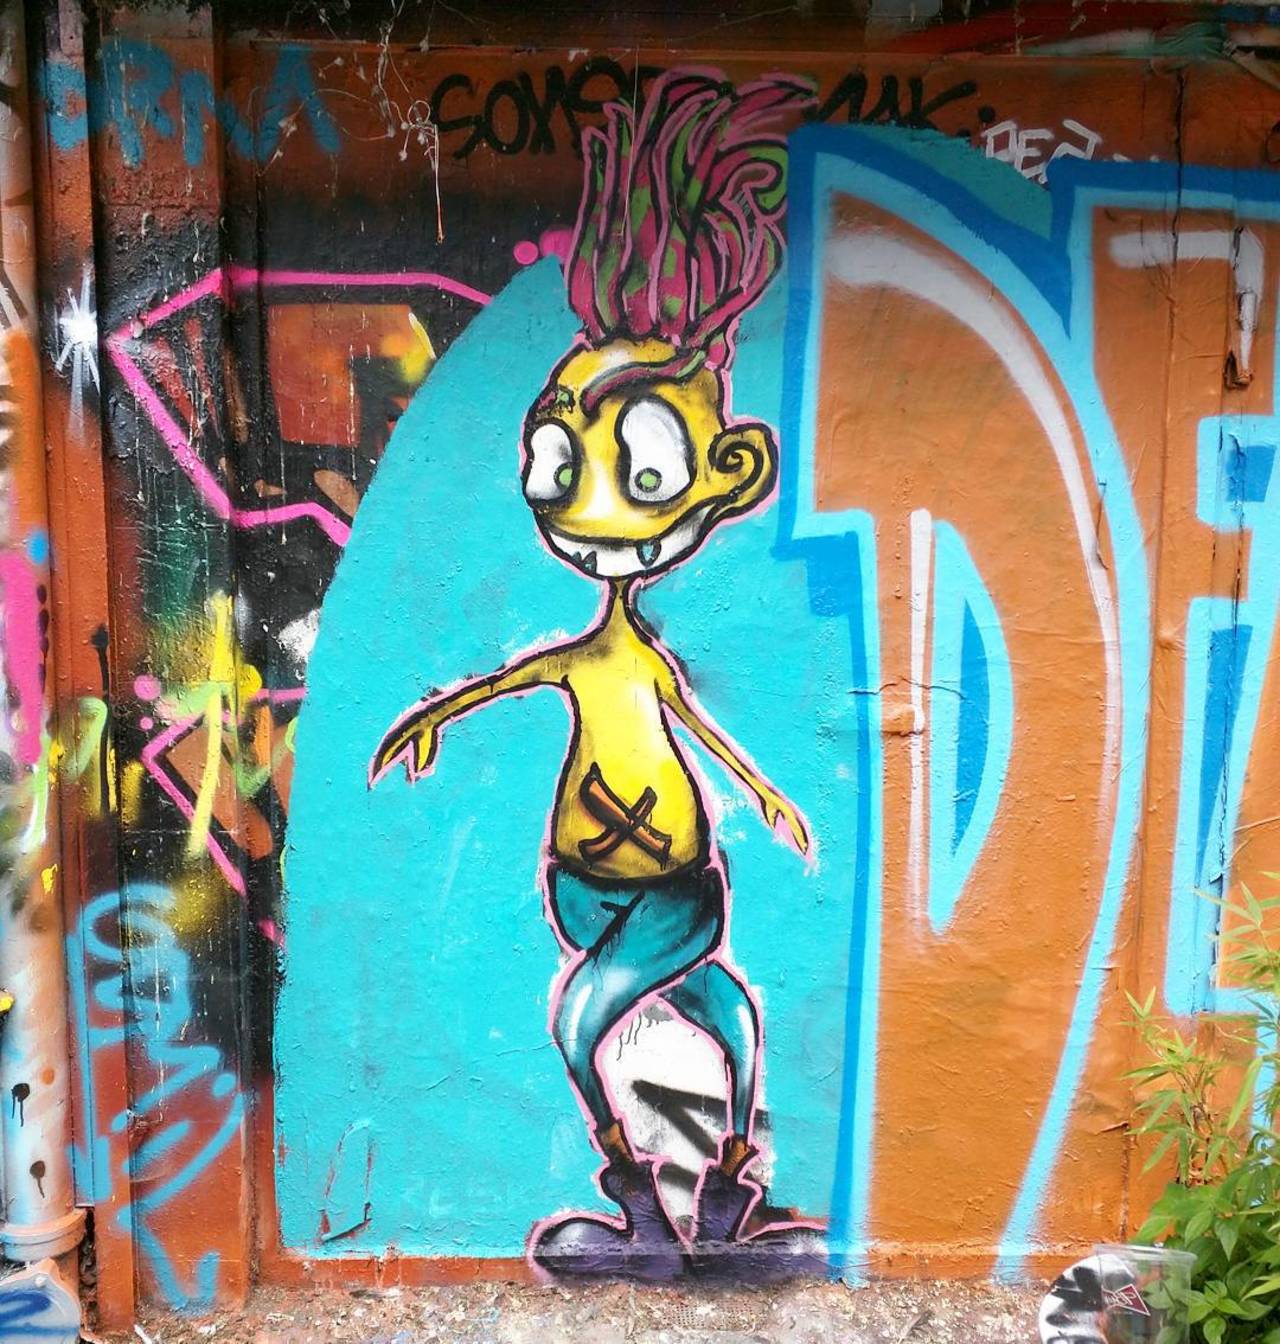 #Paris #graffiti photo by @alphaquadra http://ift.tt/1FoA0GD #StreetArt http://t.co/rzqdoAqra8